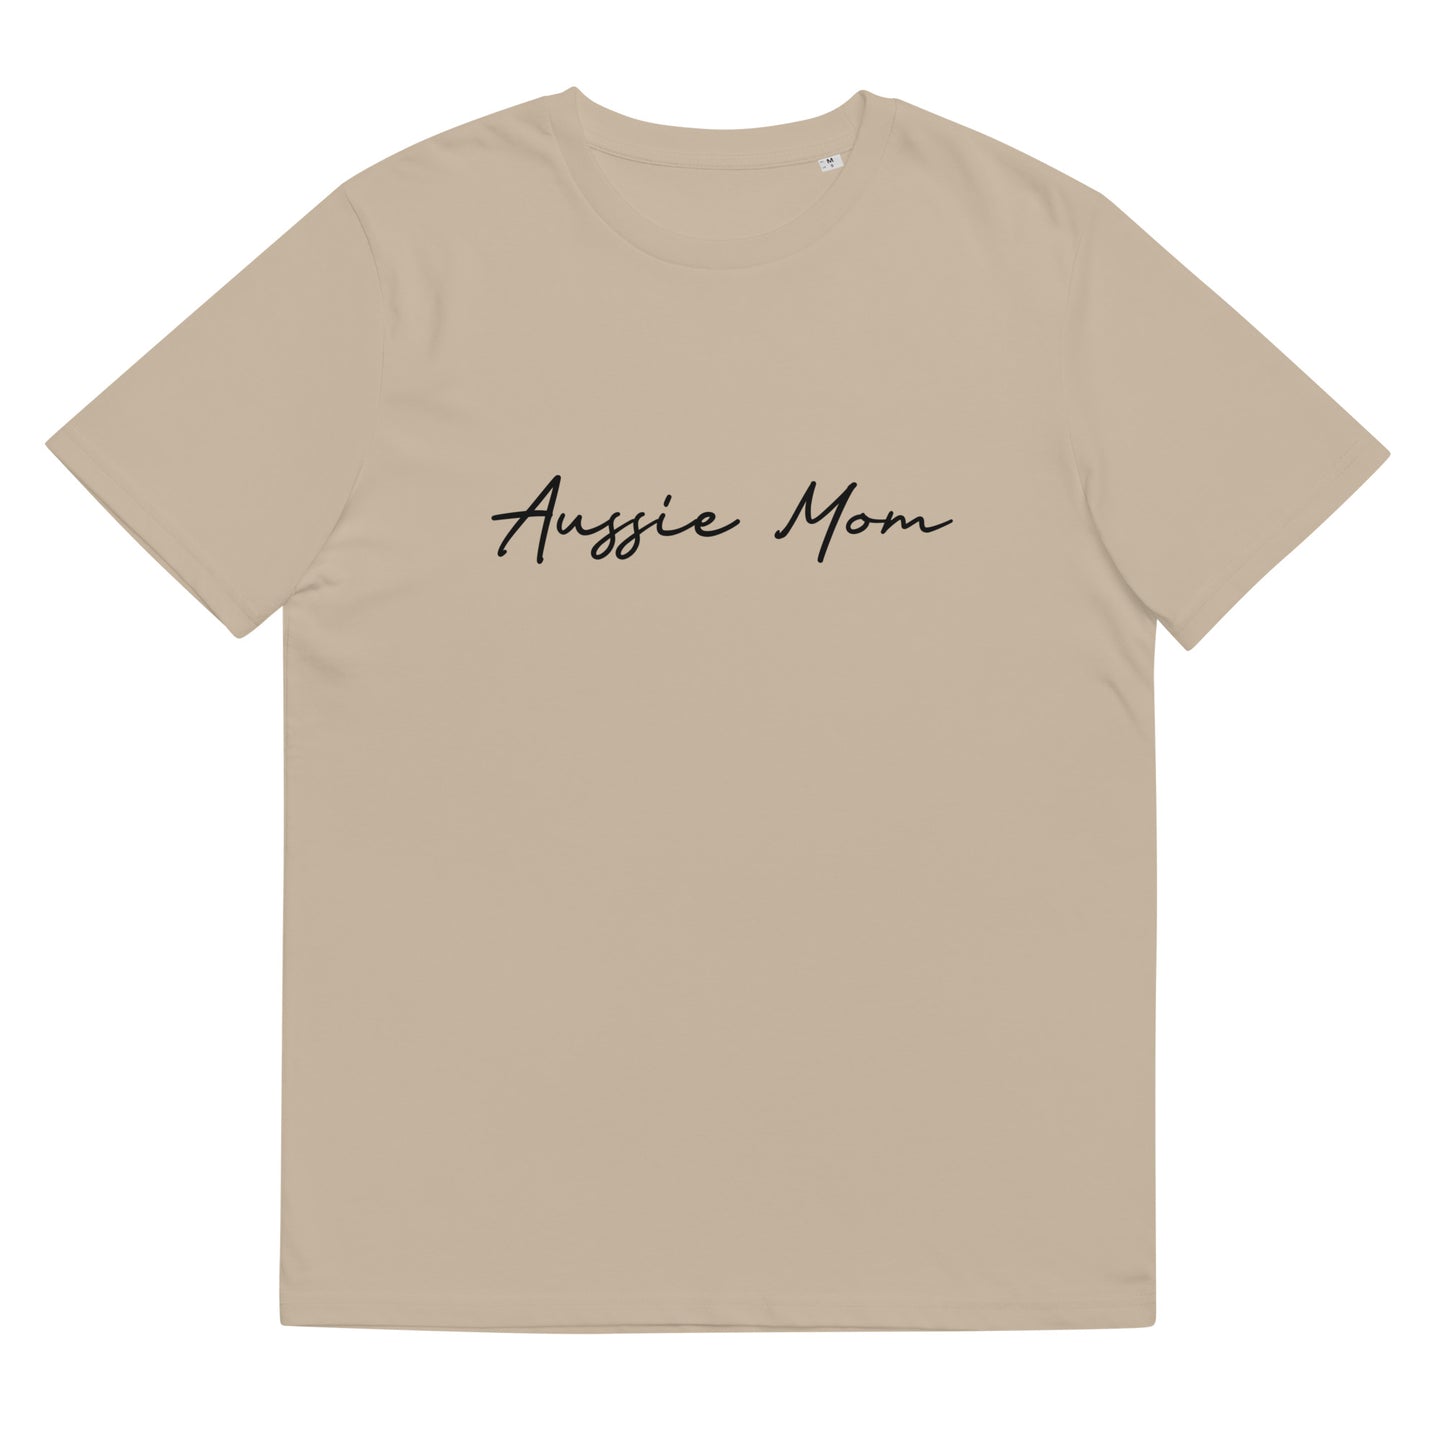 T-shirt Aussie Mom